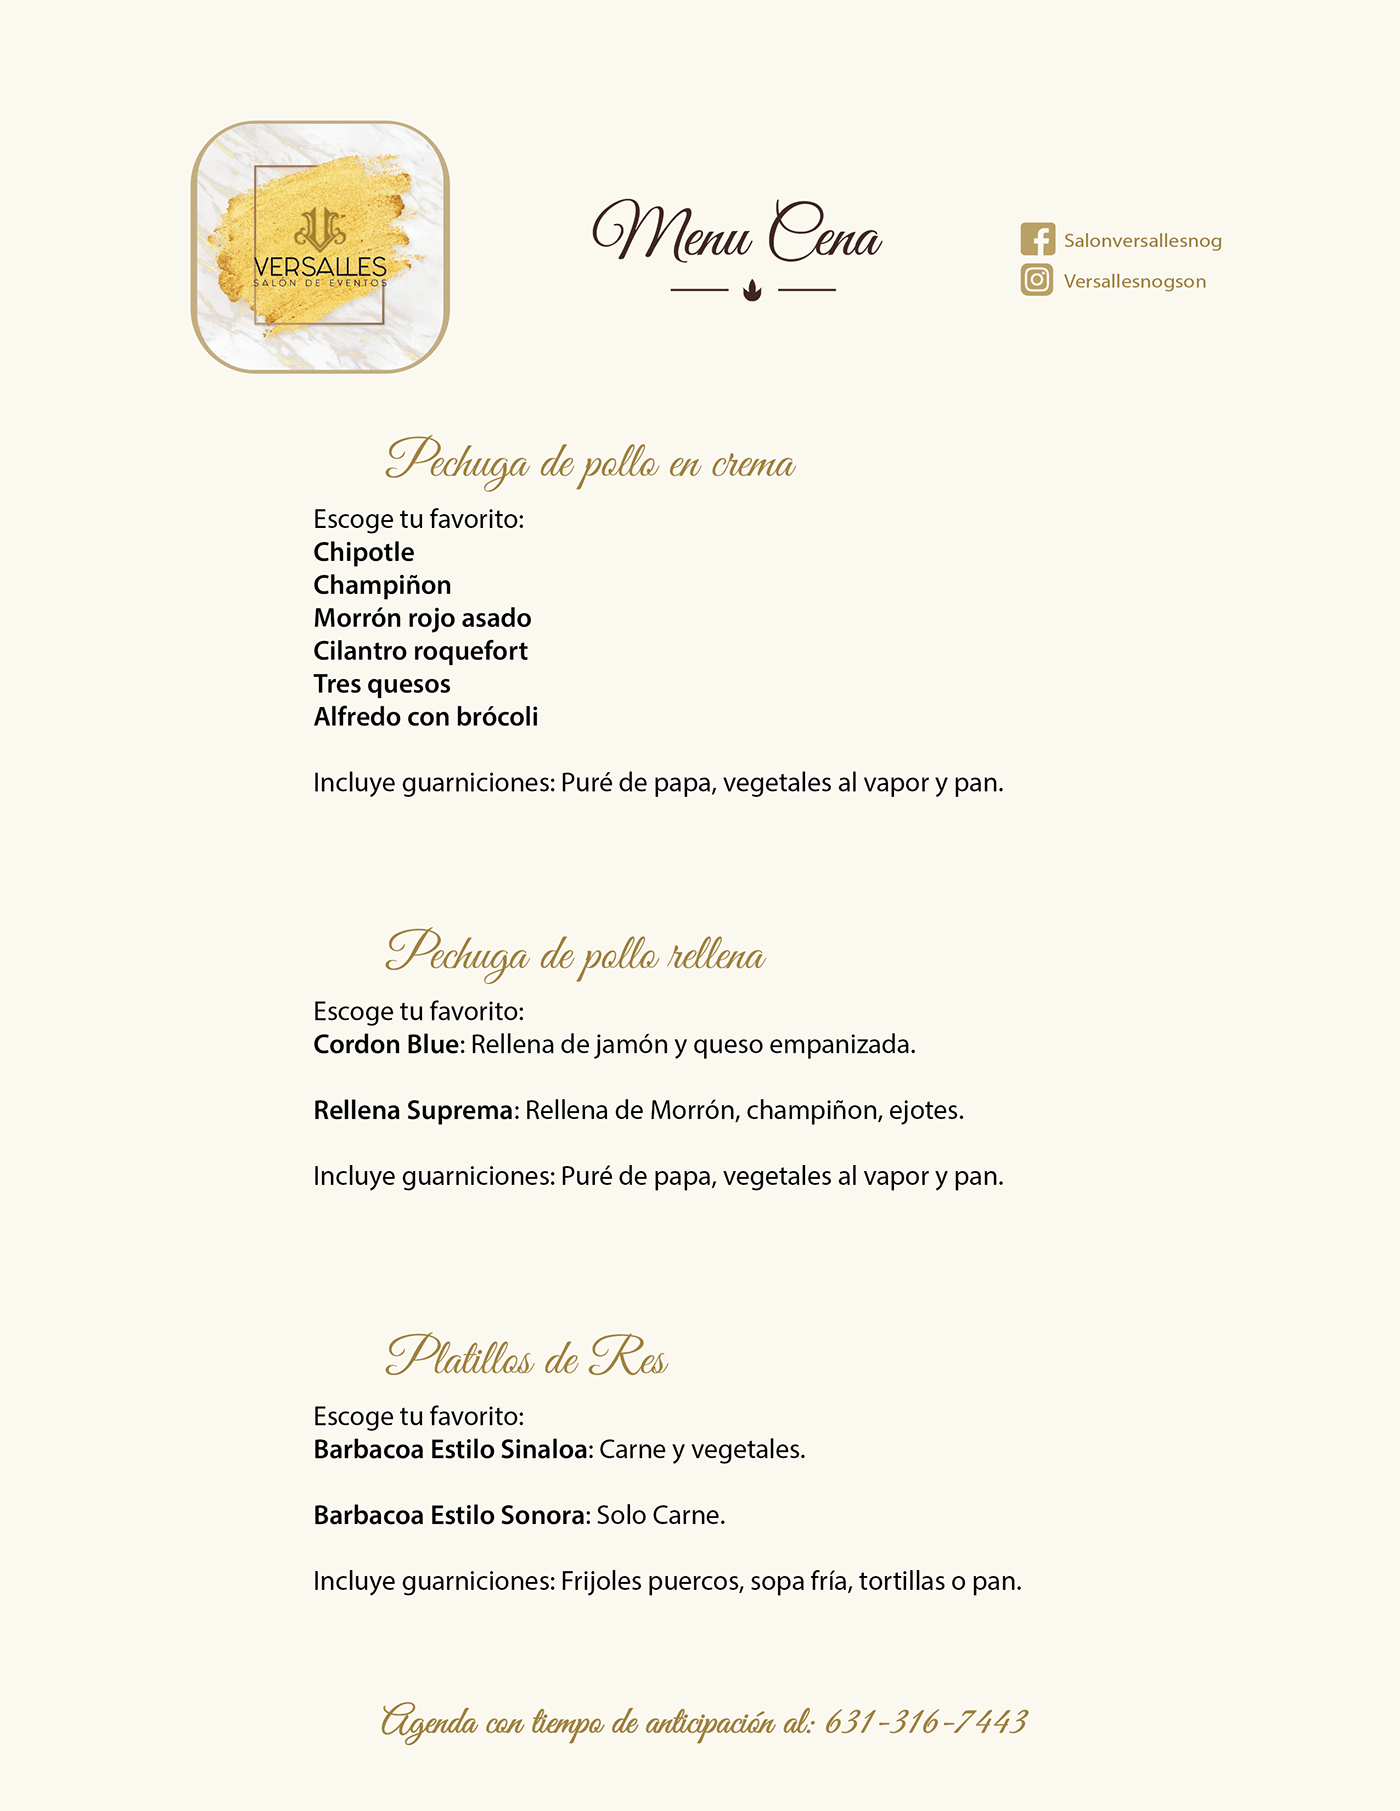 brand identity fiesta menu Menu Card menu design nogales sonora mexico Salondeeventos